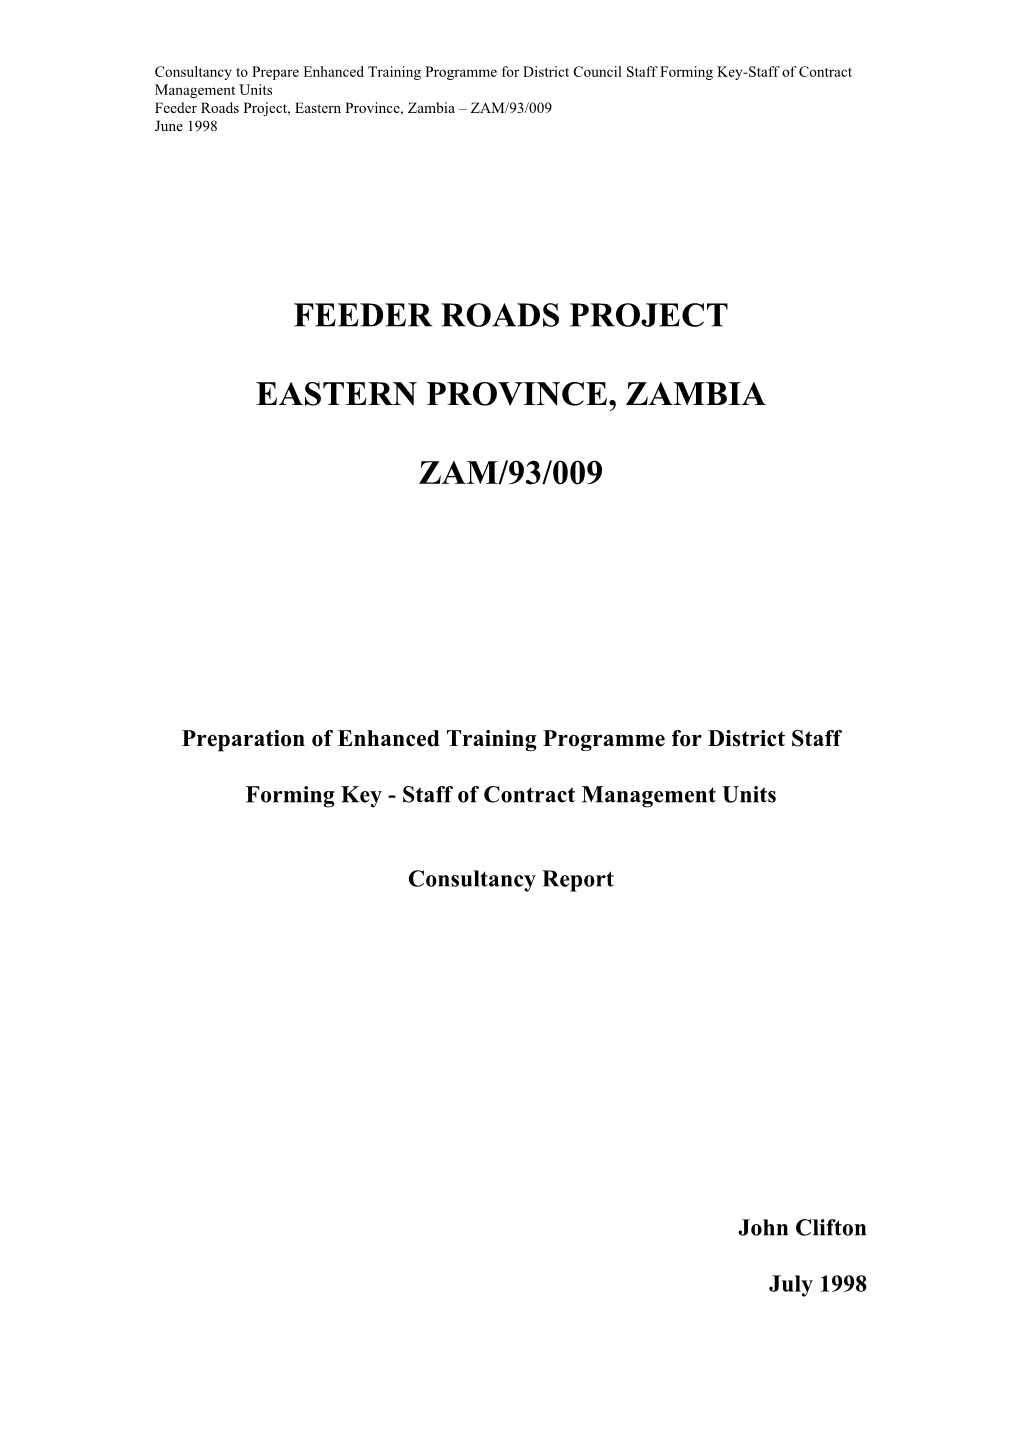 Feeder Roads Project Eastern Province, Zambia Zam/93/009